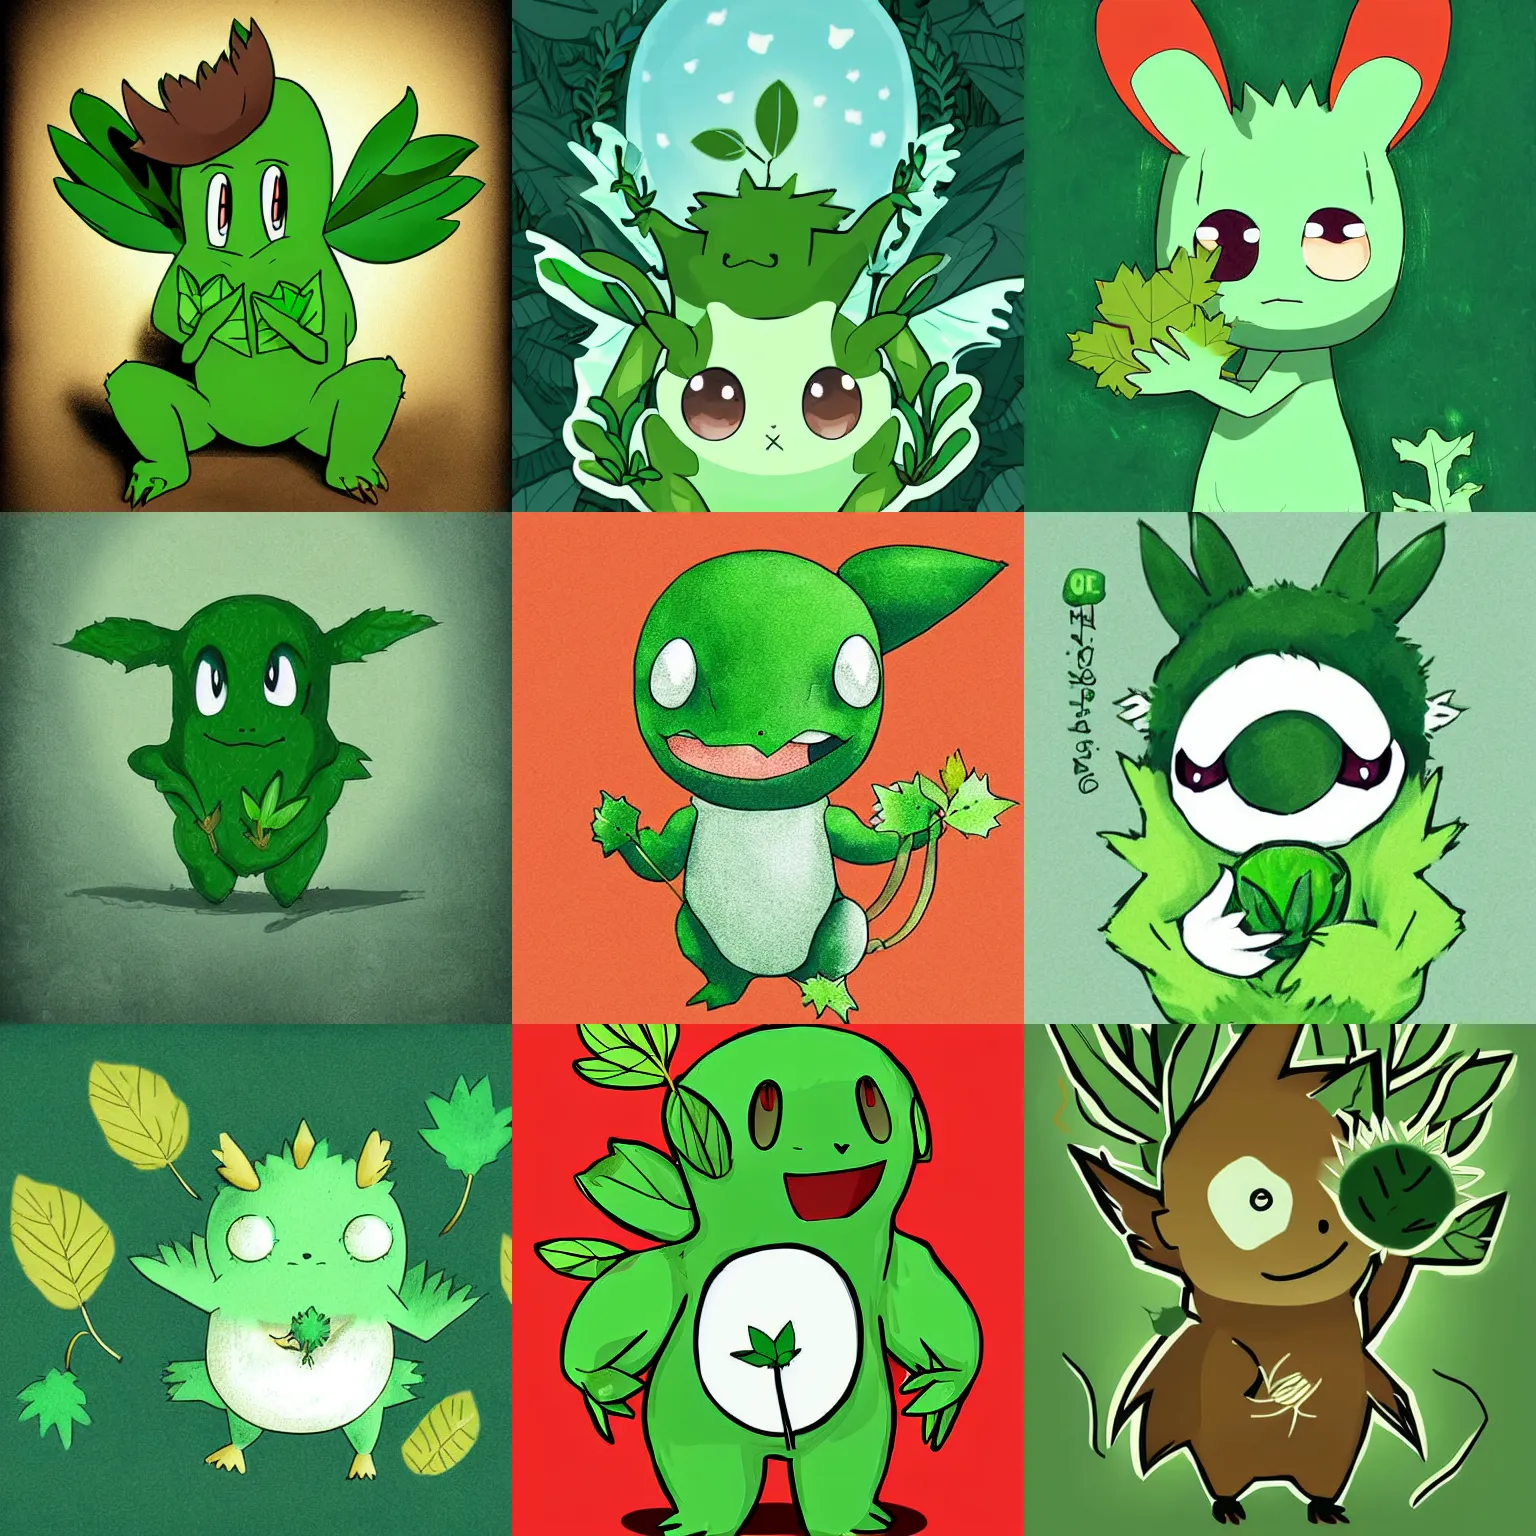 Prompt: a cute little green monster holding leaves, digital art, award - winning illustration, aesthetic, pokemon style